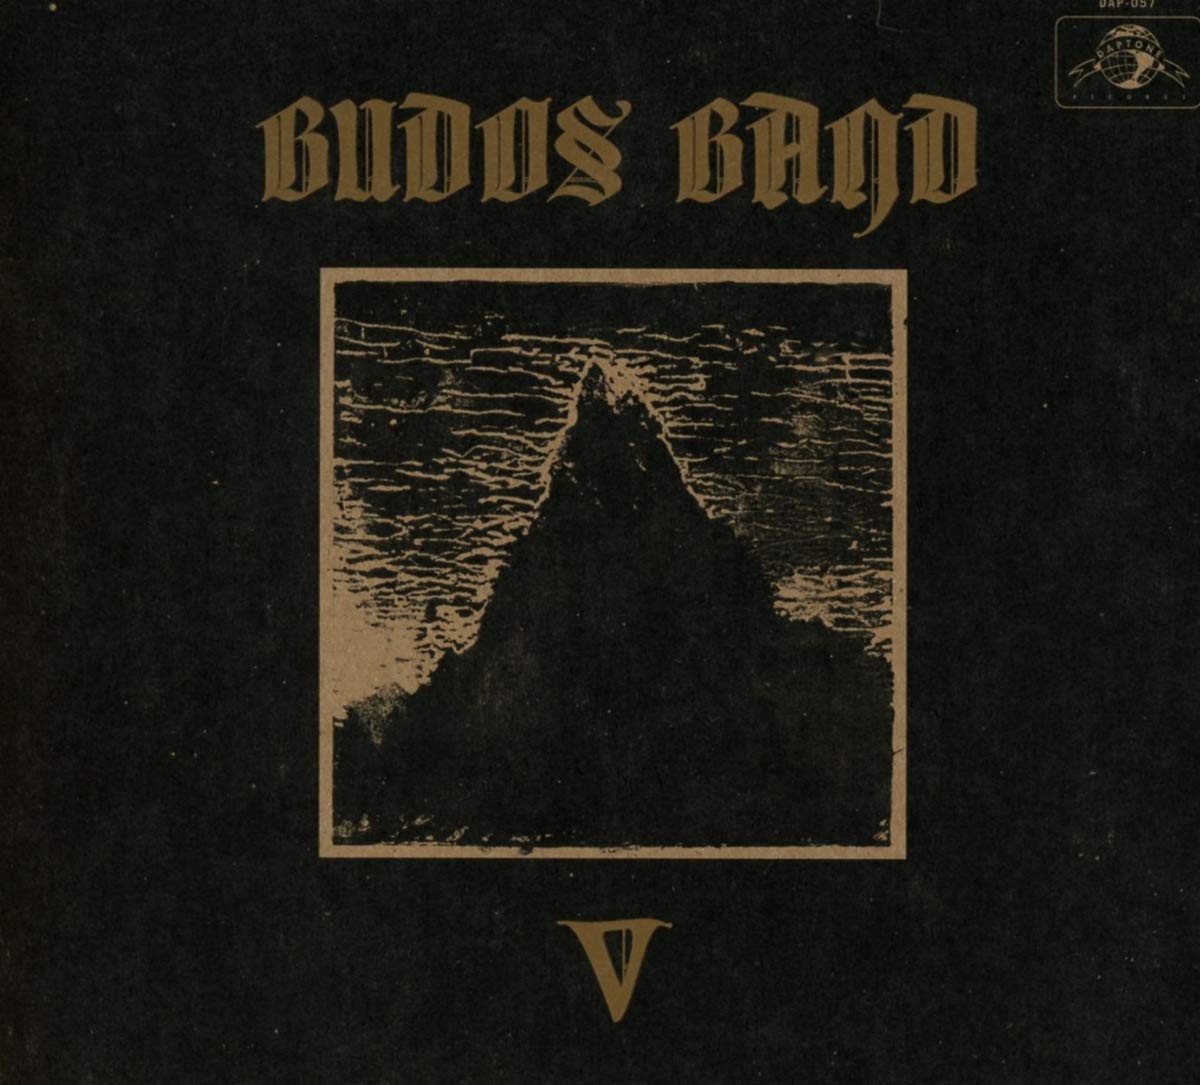 The Budos Band: V